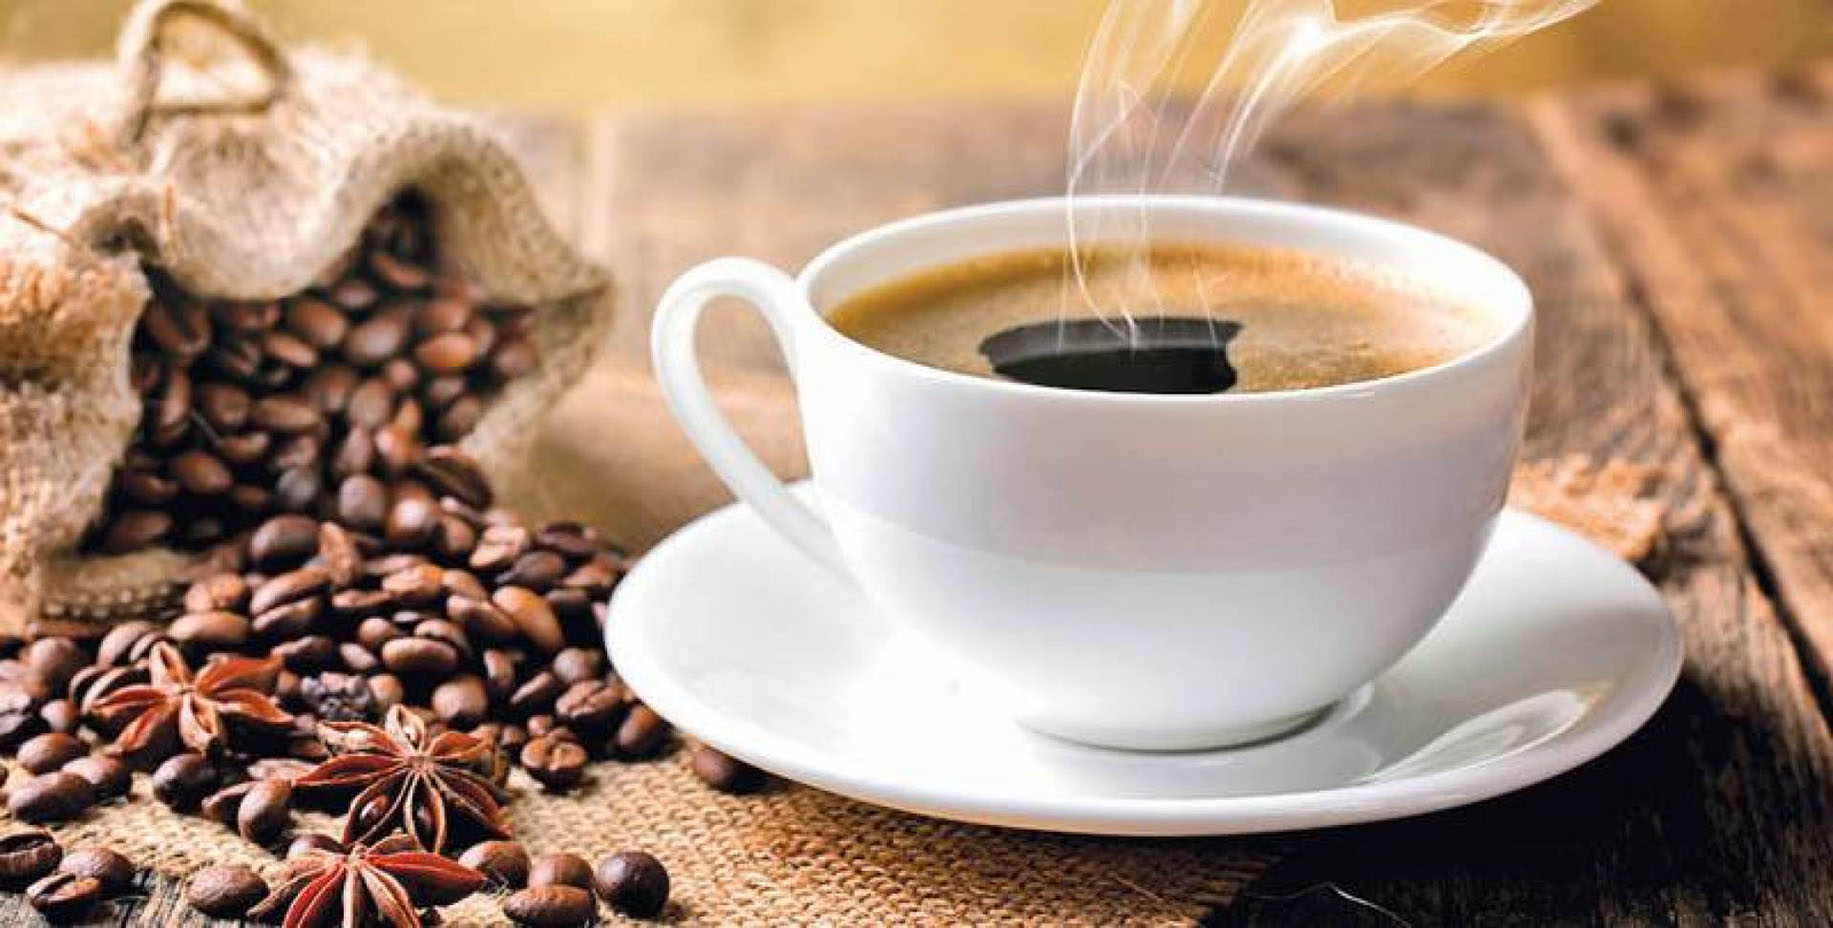 تجنب أعراض الابتعاد عن القهوة أثناء الصوم بهذه الطريقة